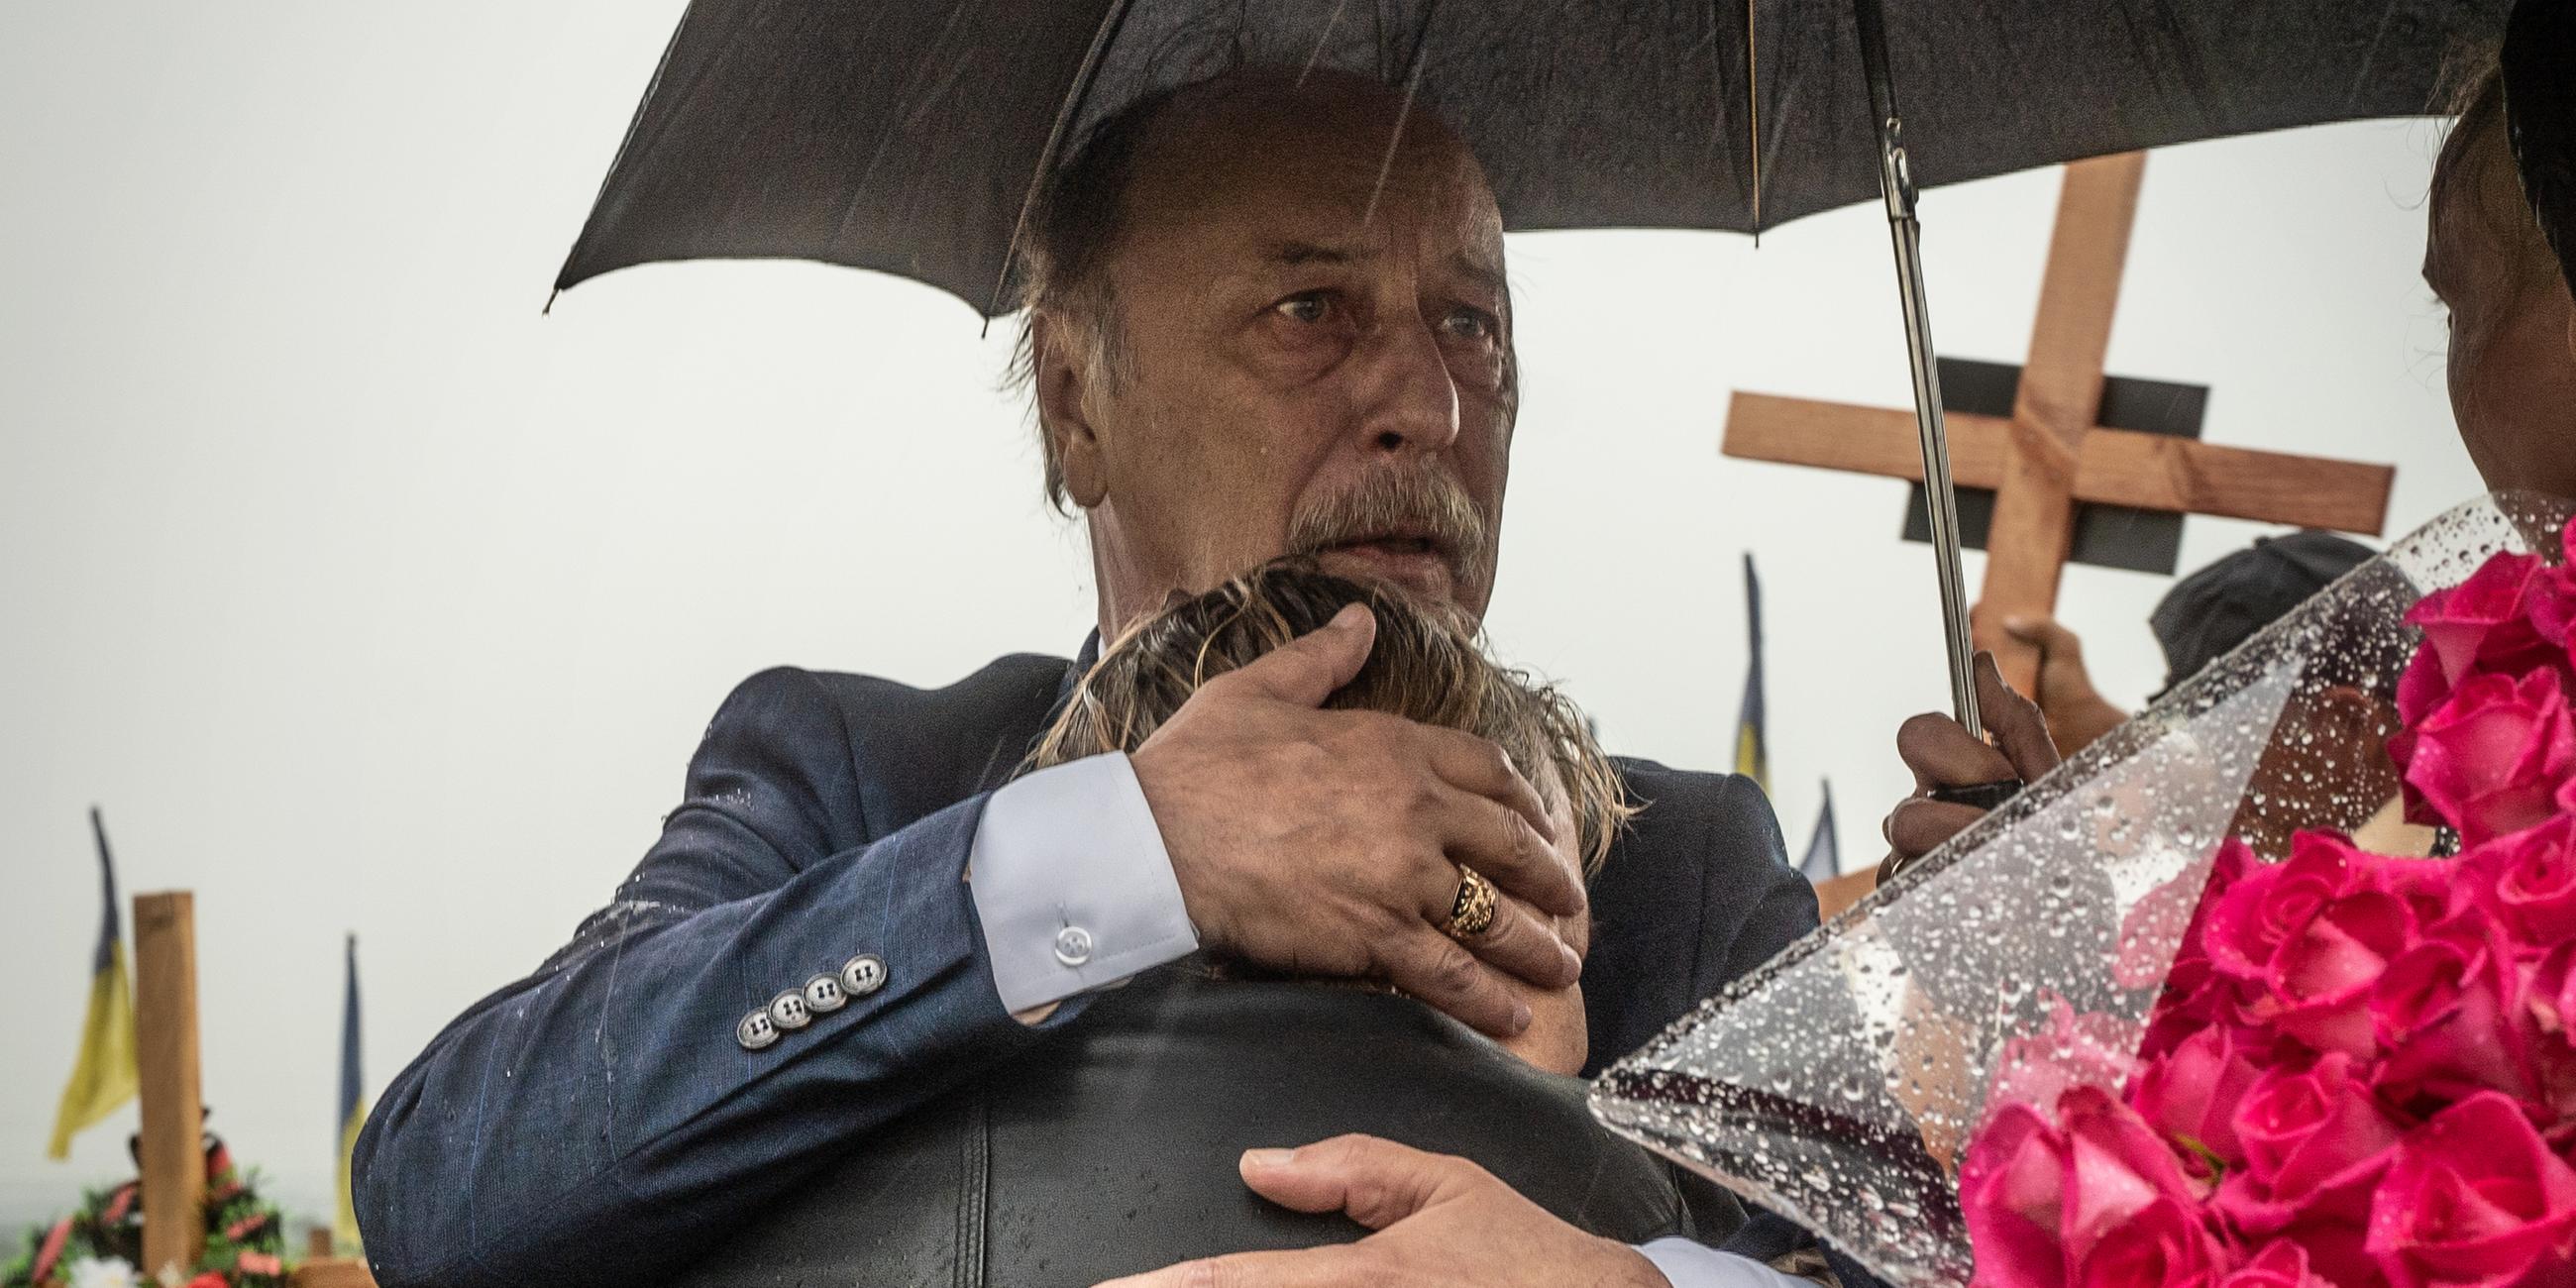 Ein Mann hält eine Frau in den Armen, über ihnen ein Regenschirm, im Hintergrund ist ein Friedhof zu sehen.